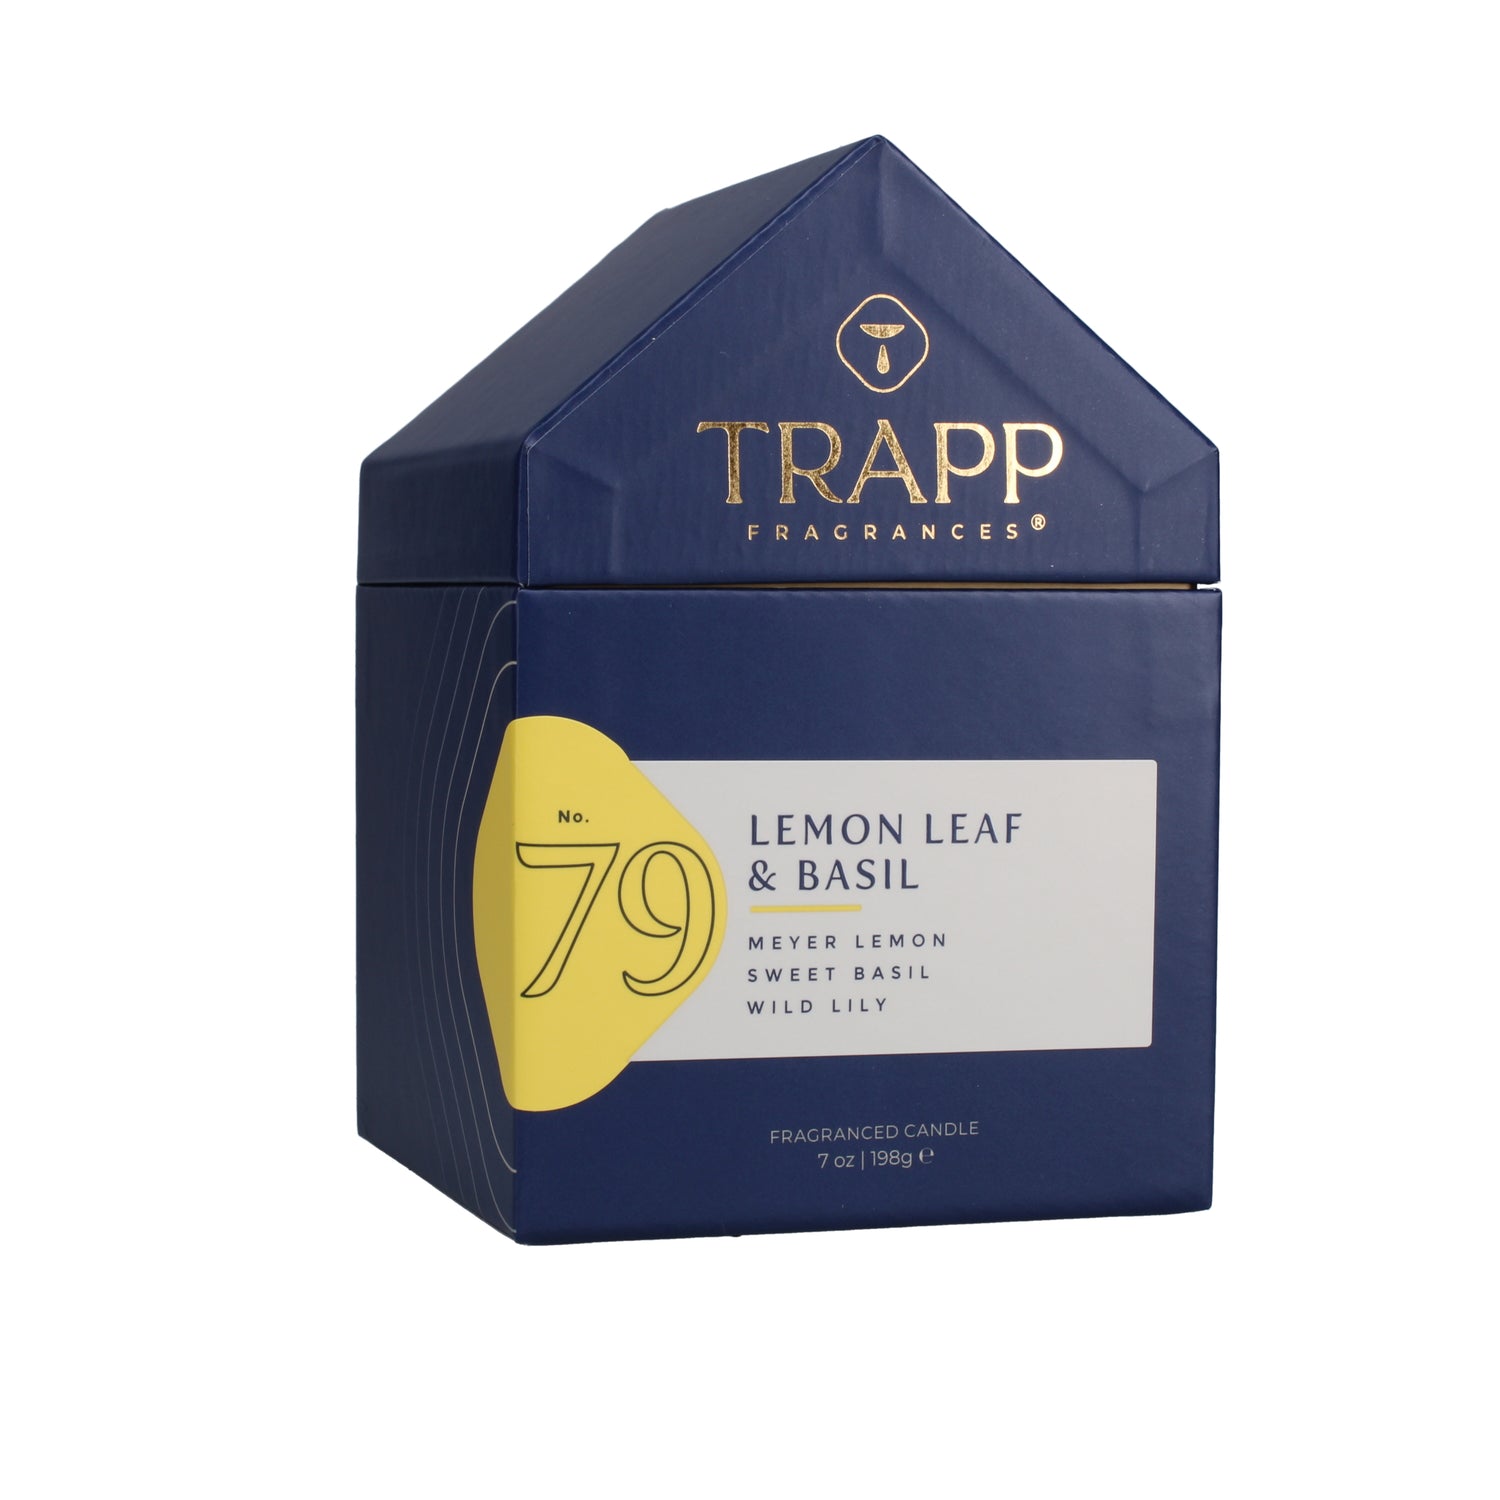 No. 79 Lemon Leaf & Basil 7 oz. Candle in House Box Image 7